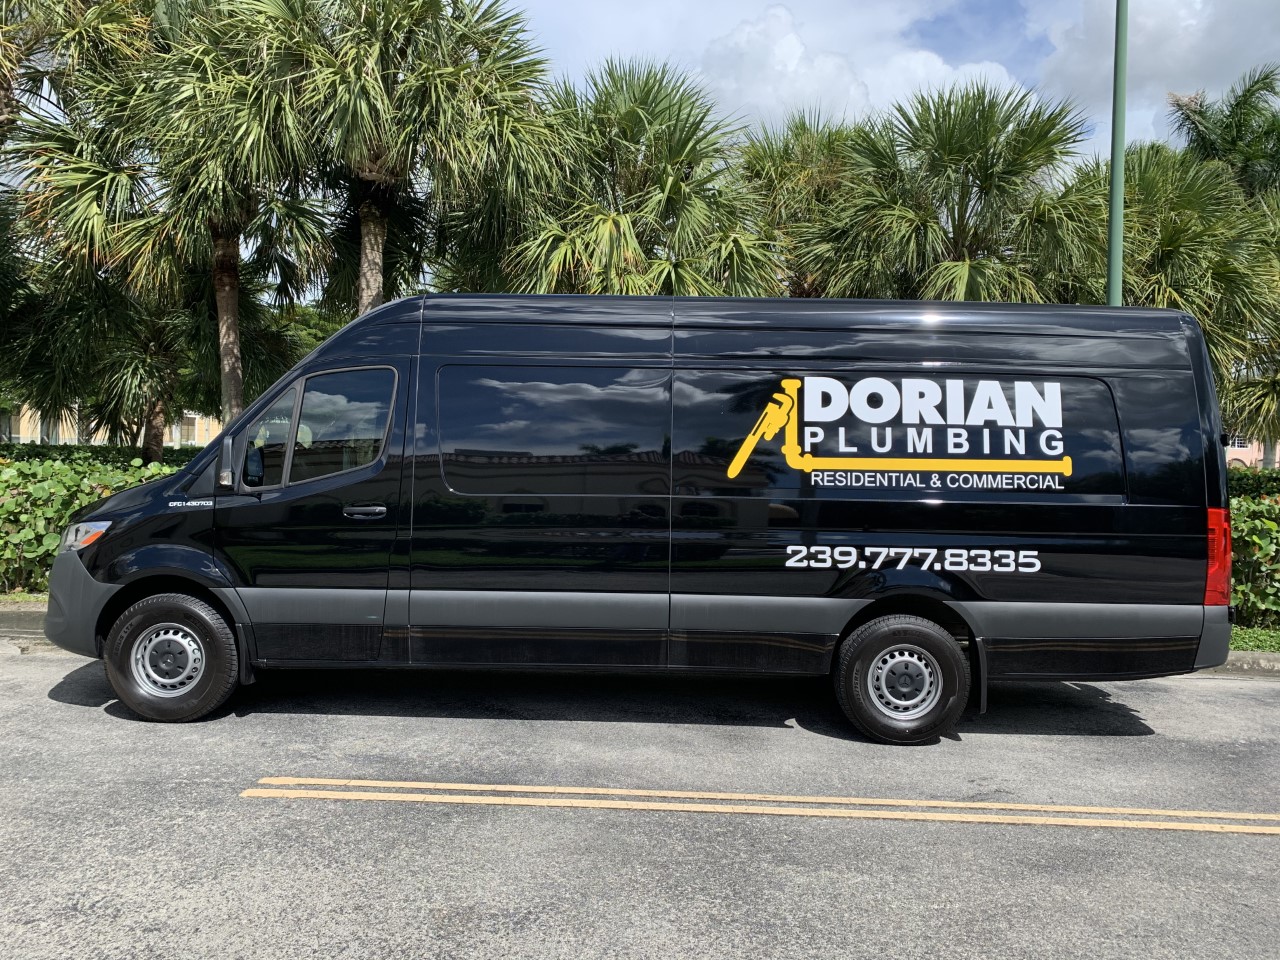 Dorian Plumbing, Naples Florida